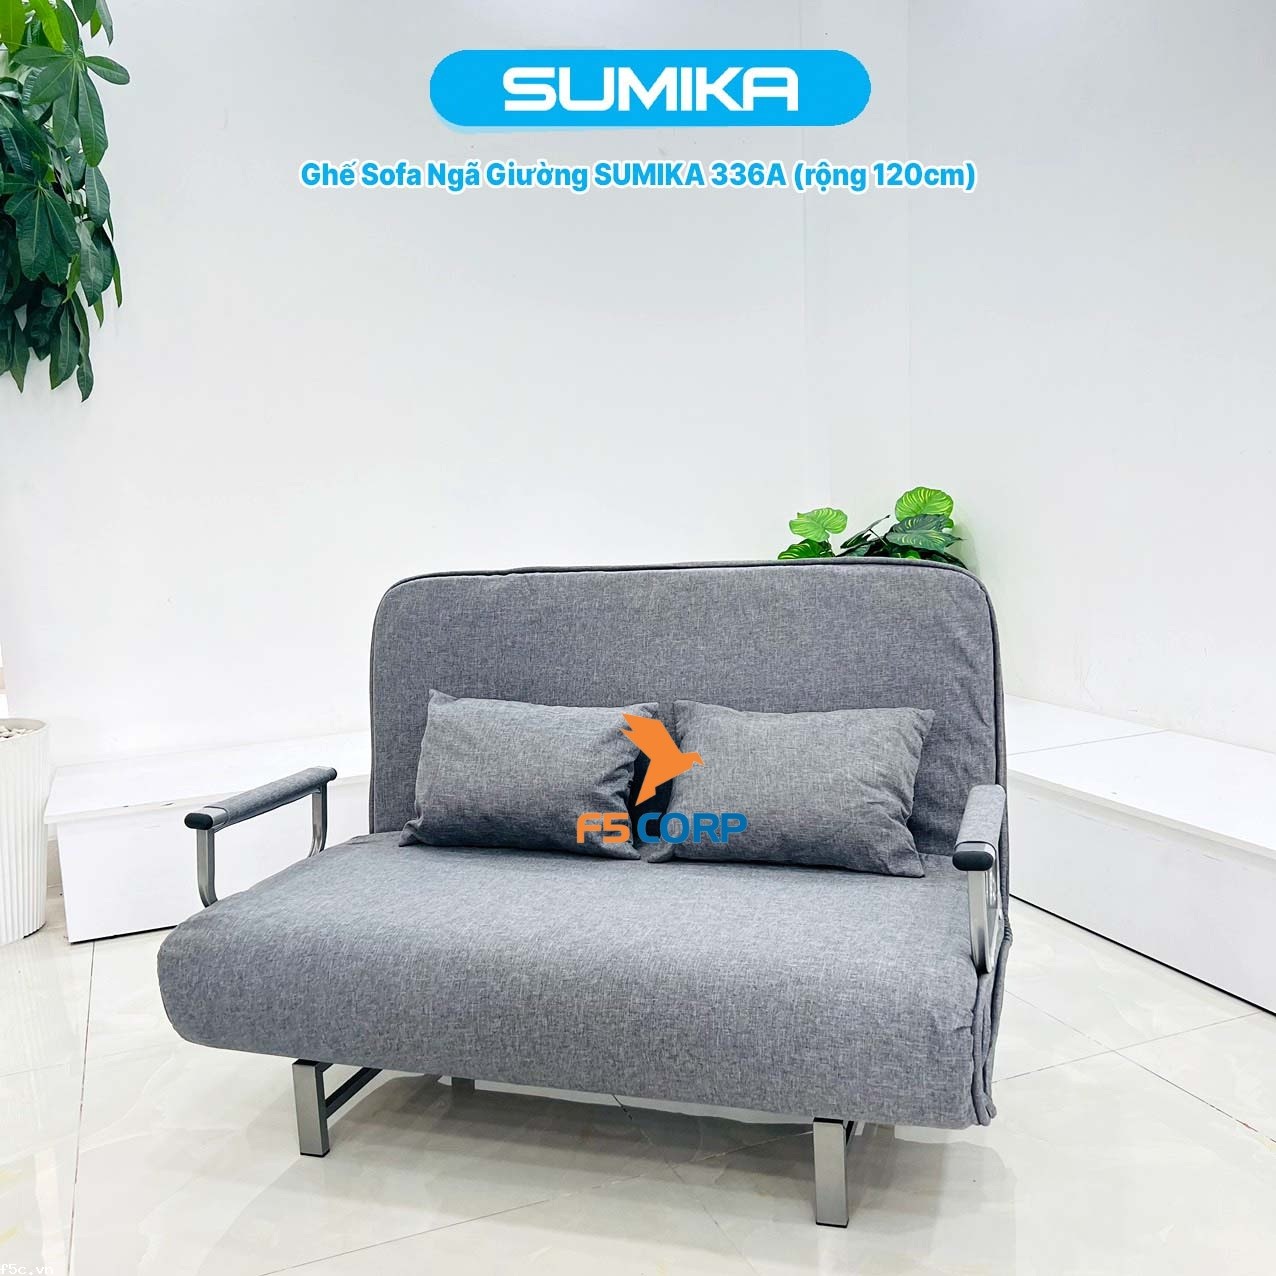 Ghế Sofa - Giường thông minh gấp gọn tiện lợi SUMIKA 336A, rộng 120cm